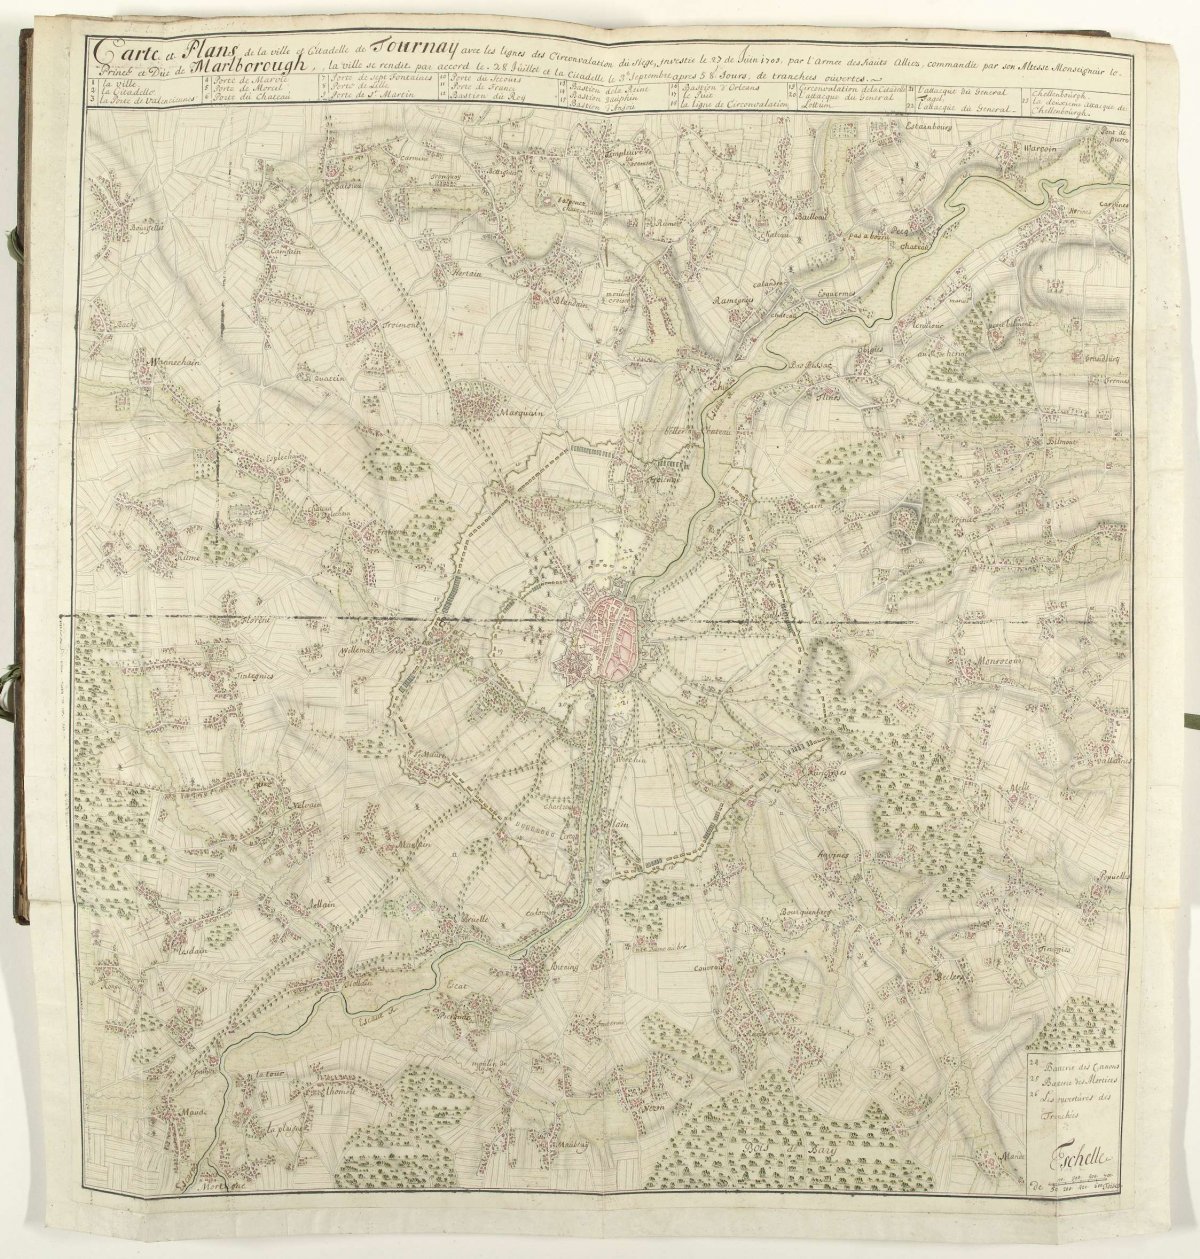 Siege of Tournai, 1709, Samuel Du Ry de Champdoré, 1709